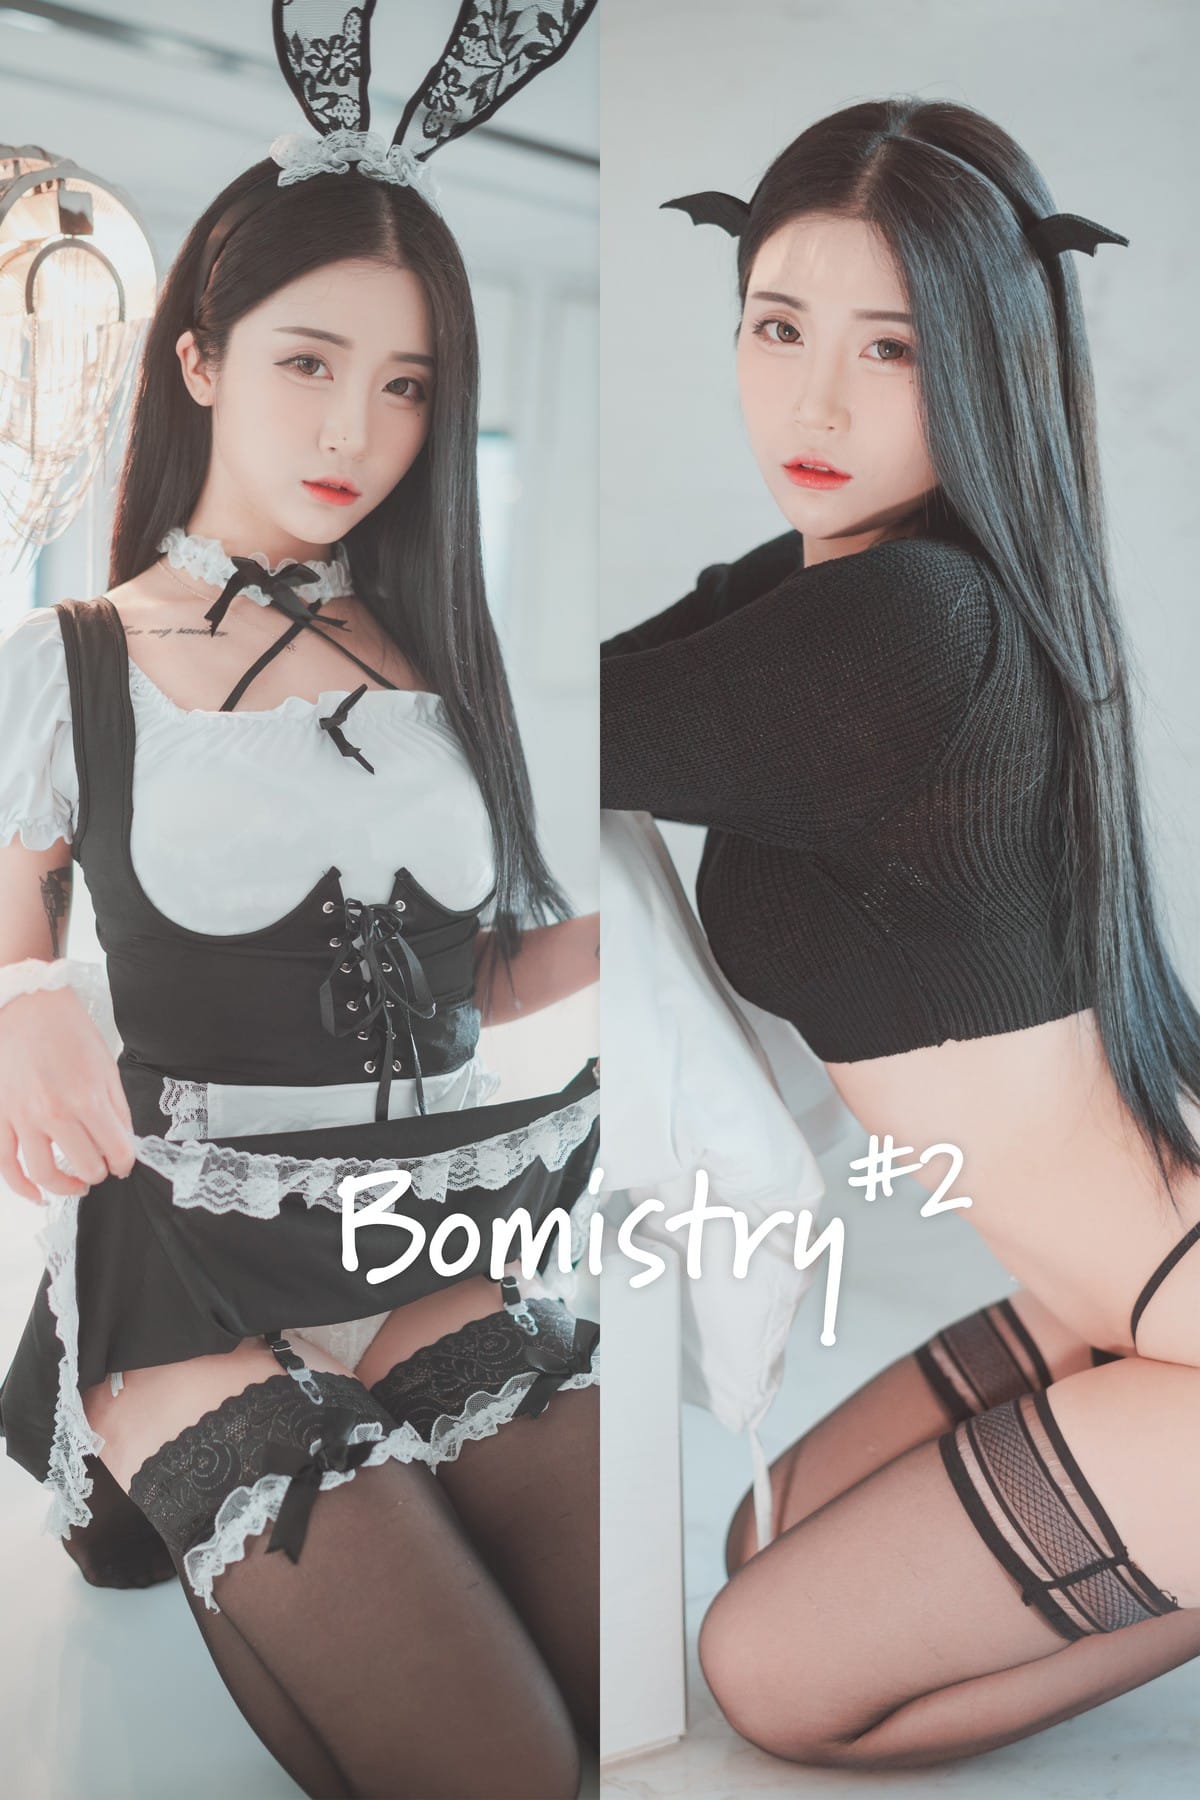 美女模特Bomi兔女郎装扮黑丝美腿Bomistry主题写真